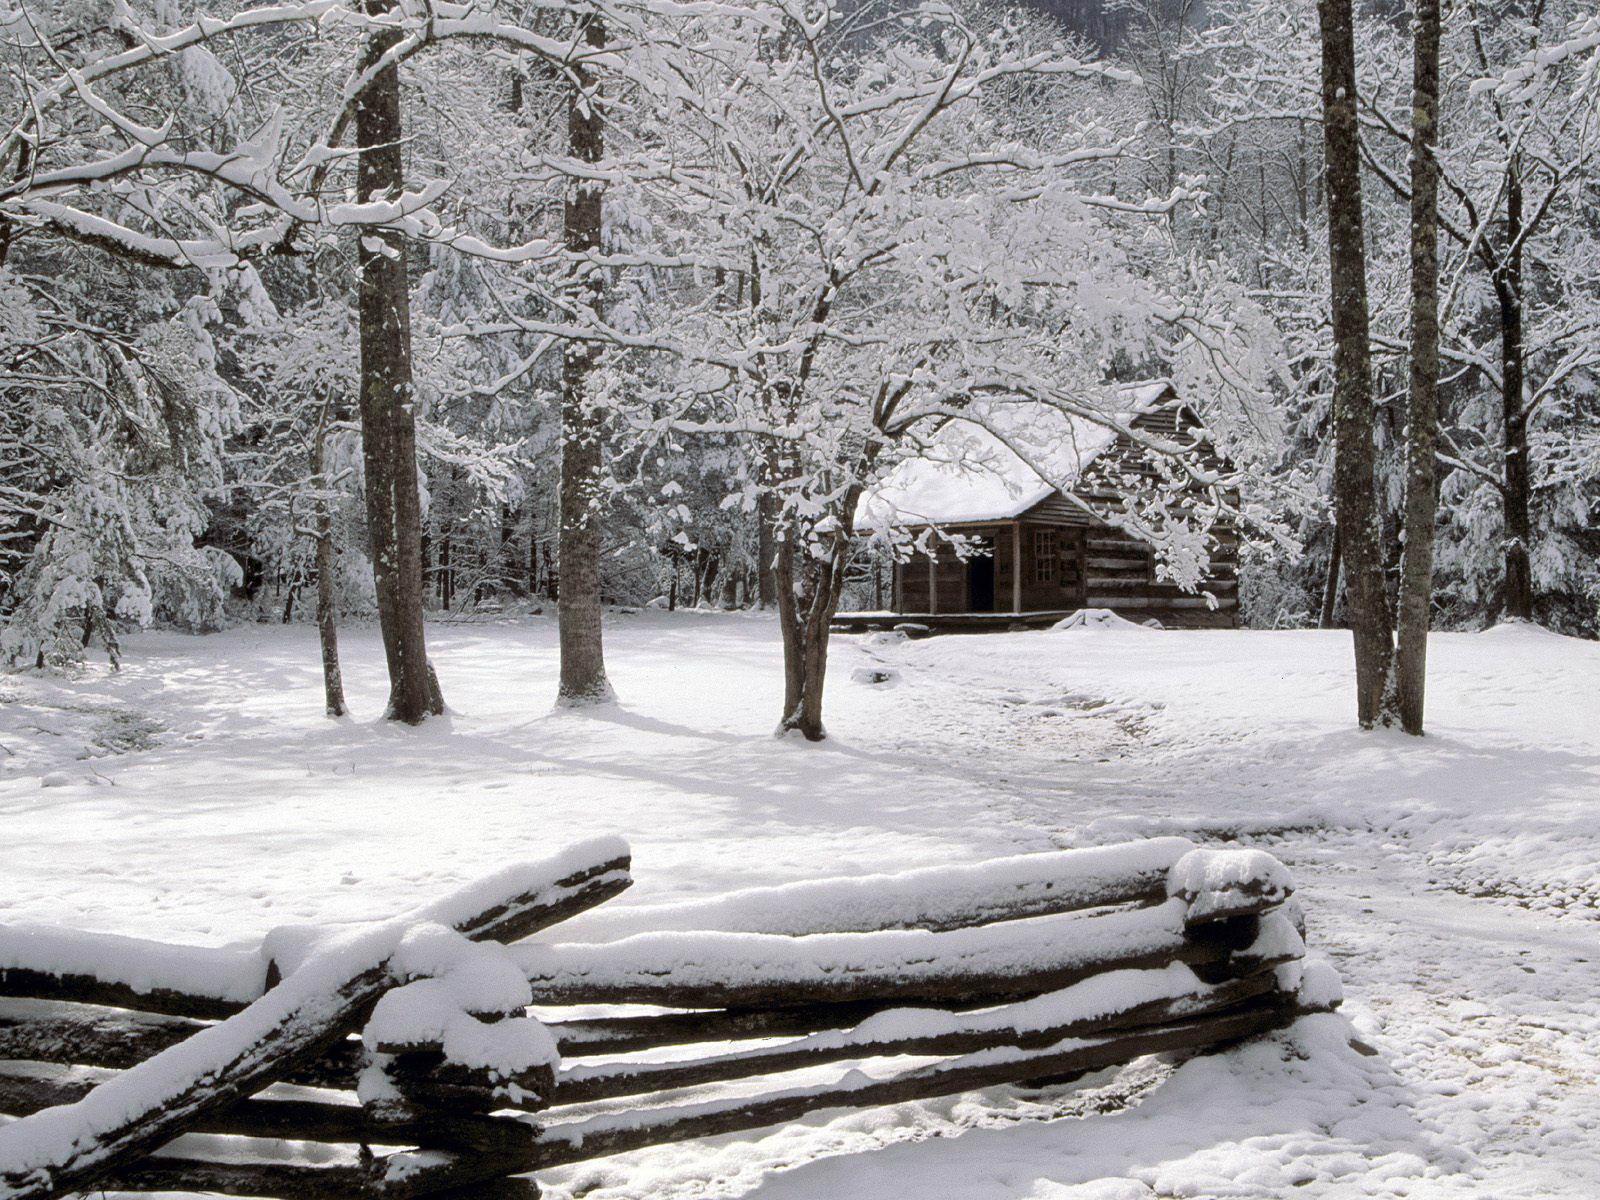 Carter shields cabin in winter free desktop background